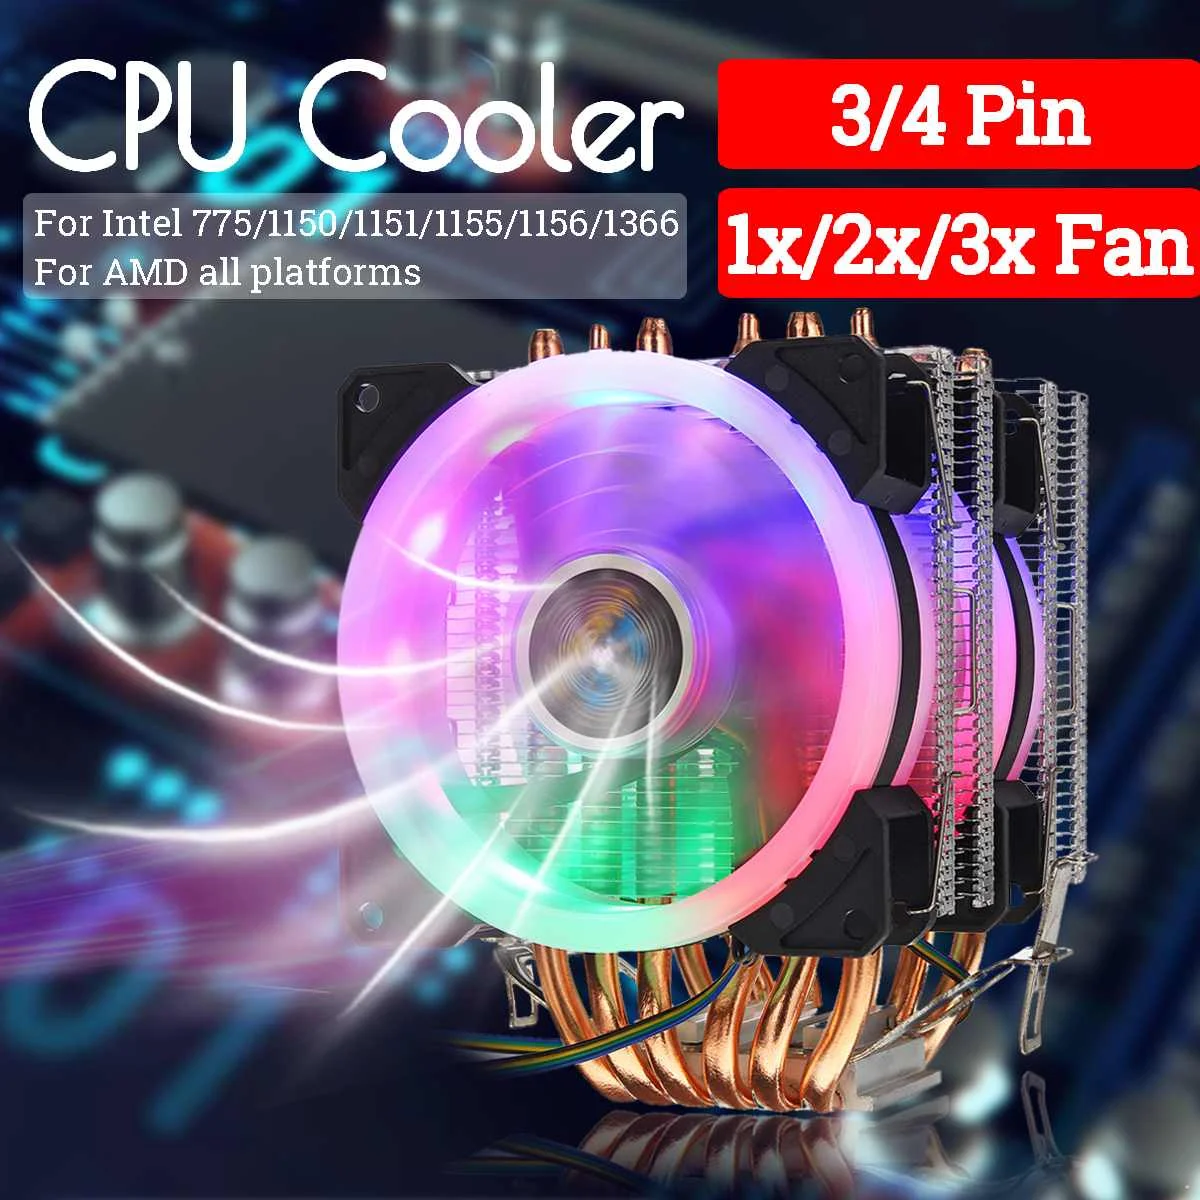 Процессор кулер вентилятор Радиатор охлаждения 6 Медь с тепловым стержнем heat pipe 3/4 Pin коробка передач с Вентилятор Кулер для Intel 775/1150/1151/1155/1156/1366 и AMD все платформы